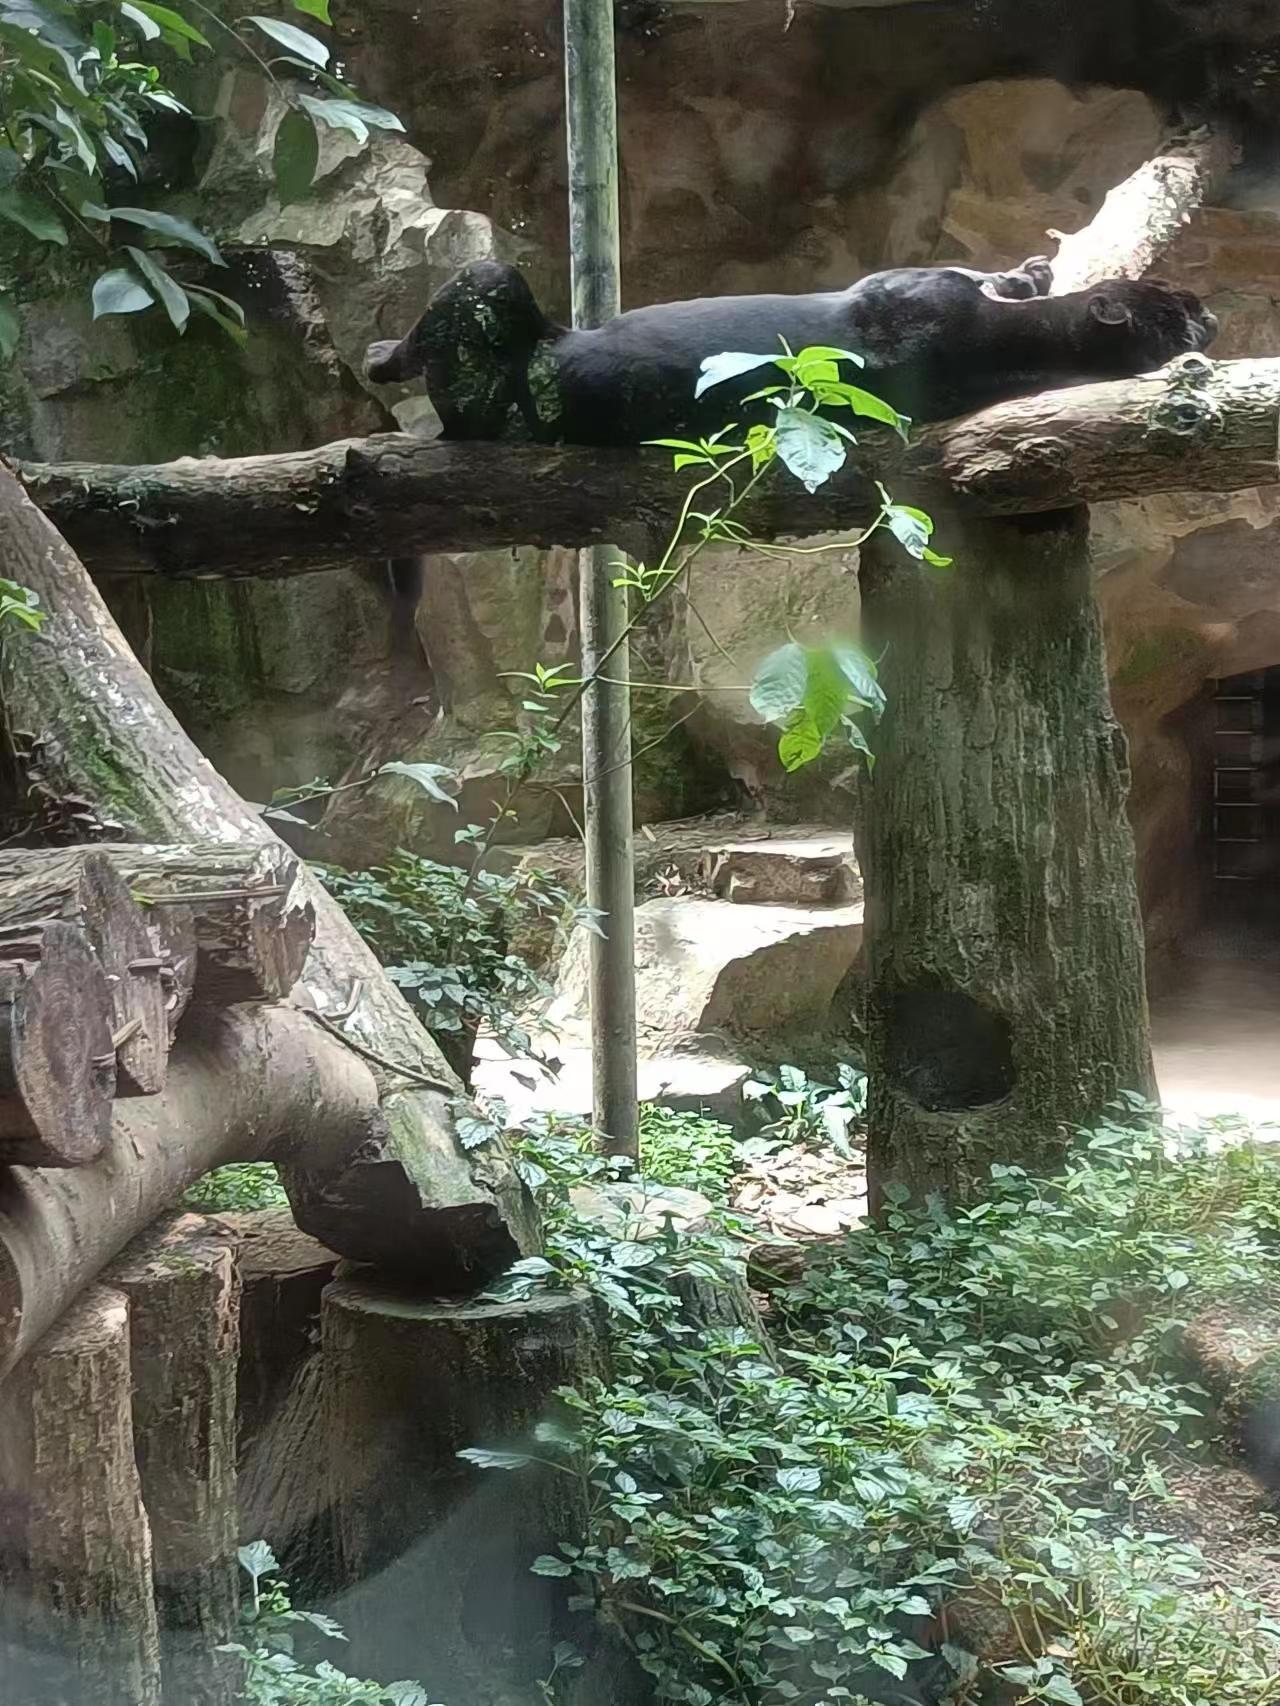 杭州动物园